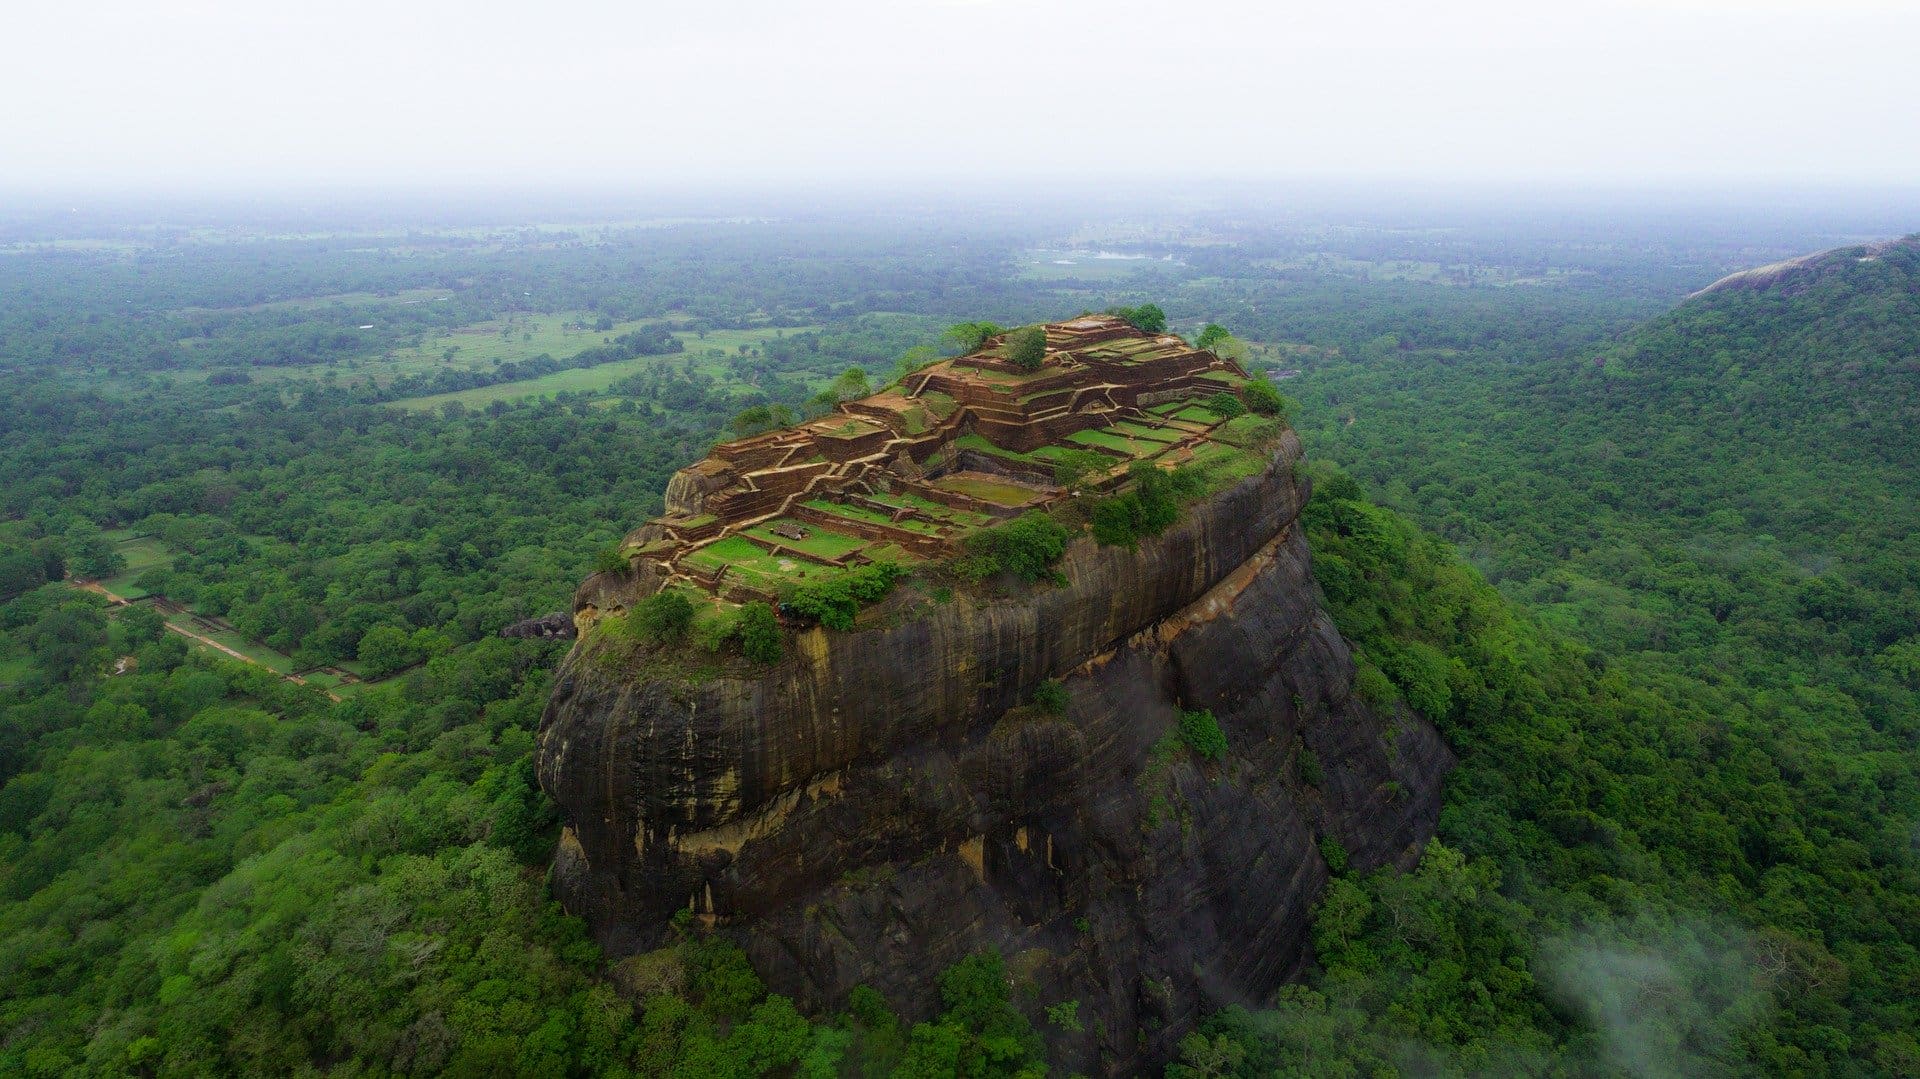 Lion rock in Sri Lanka